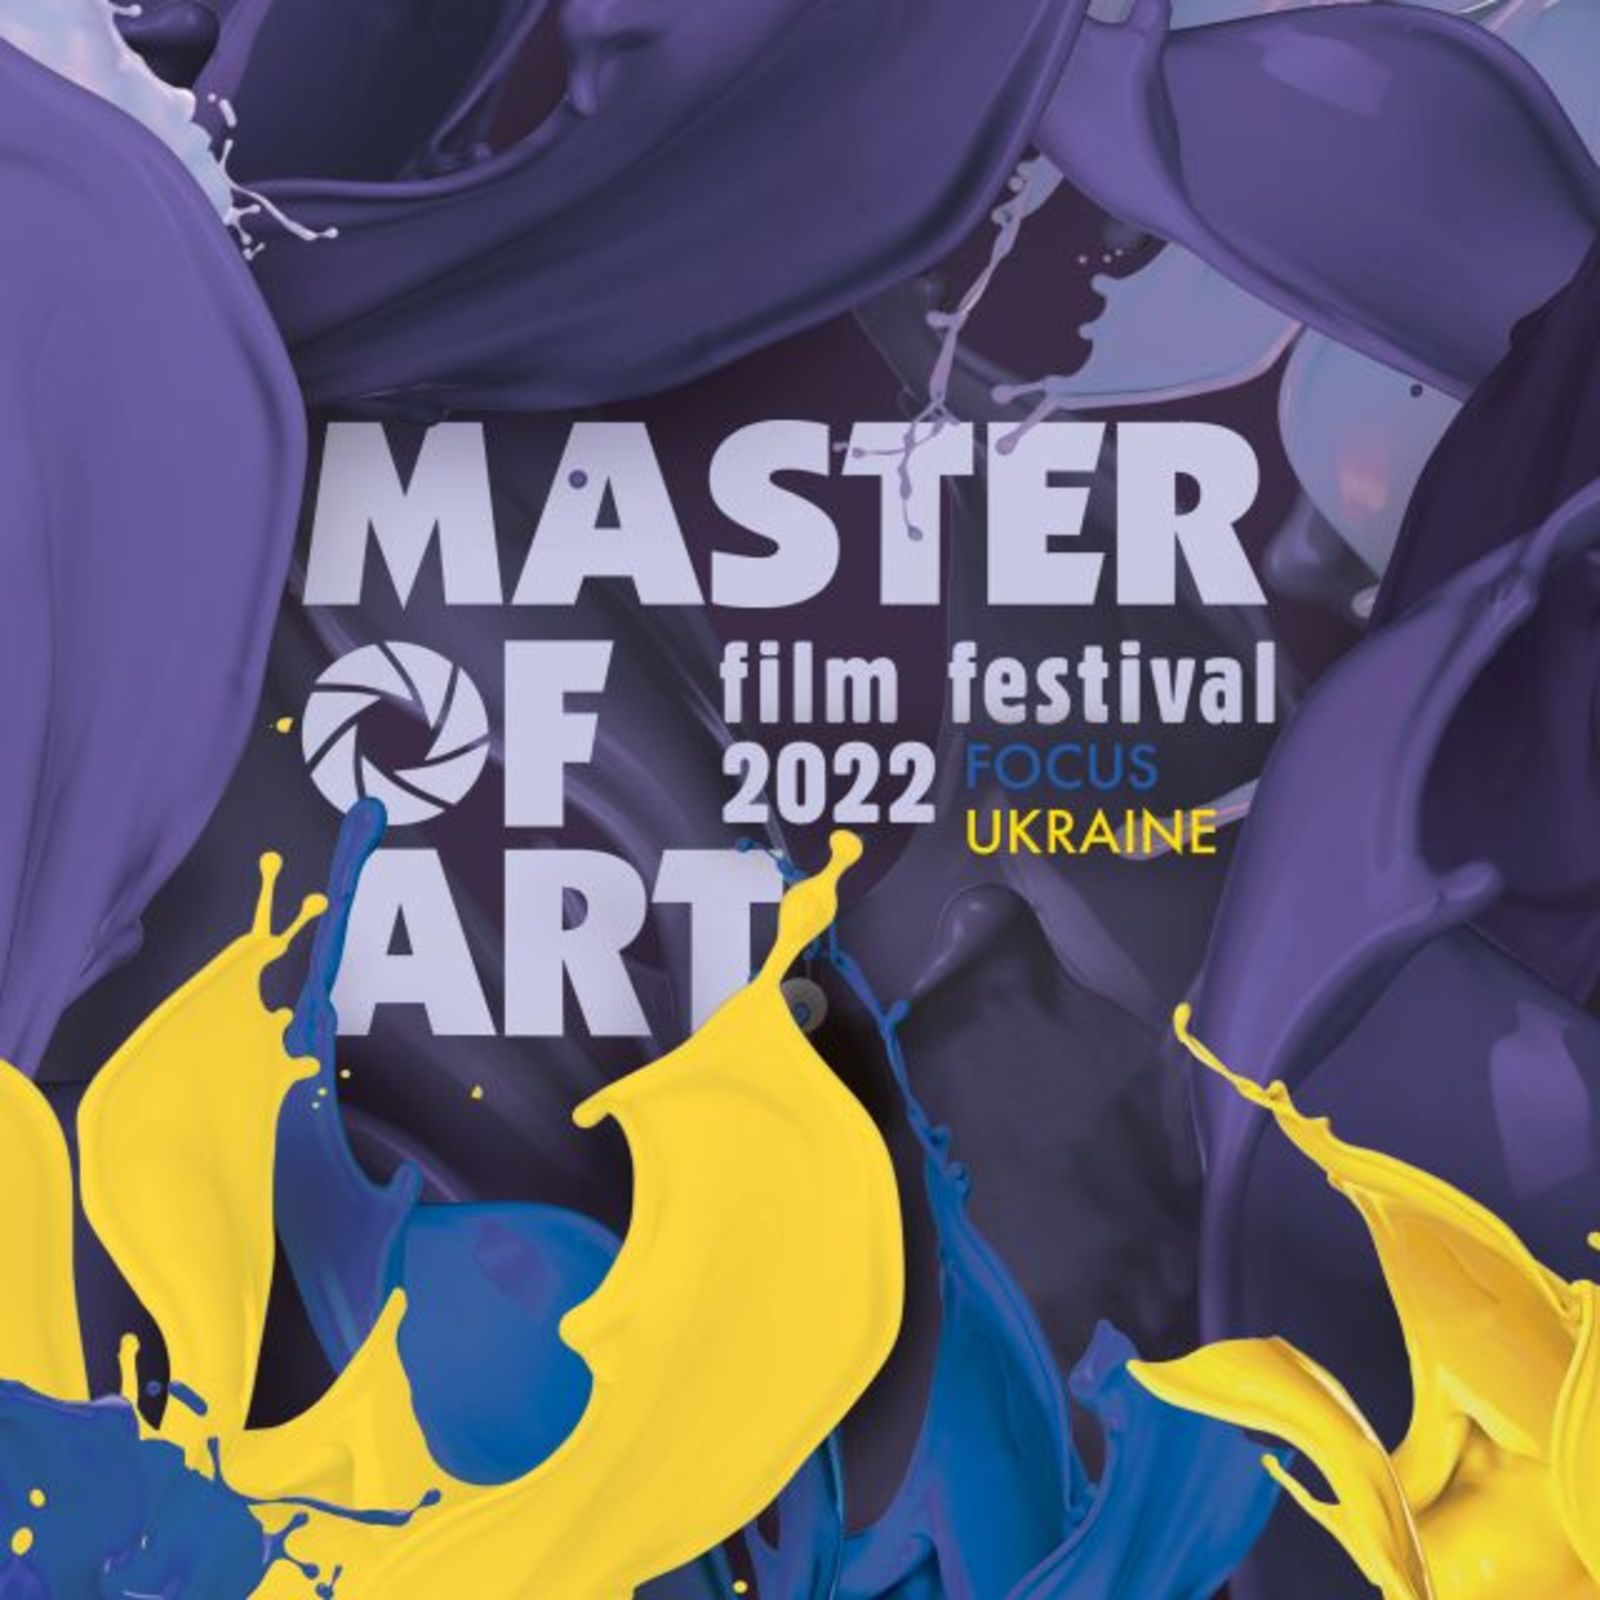 The Film Festival Master of Art Conqueres Sofia cinemas again in April 2022